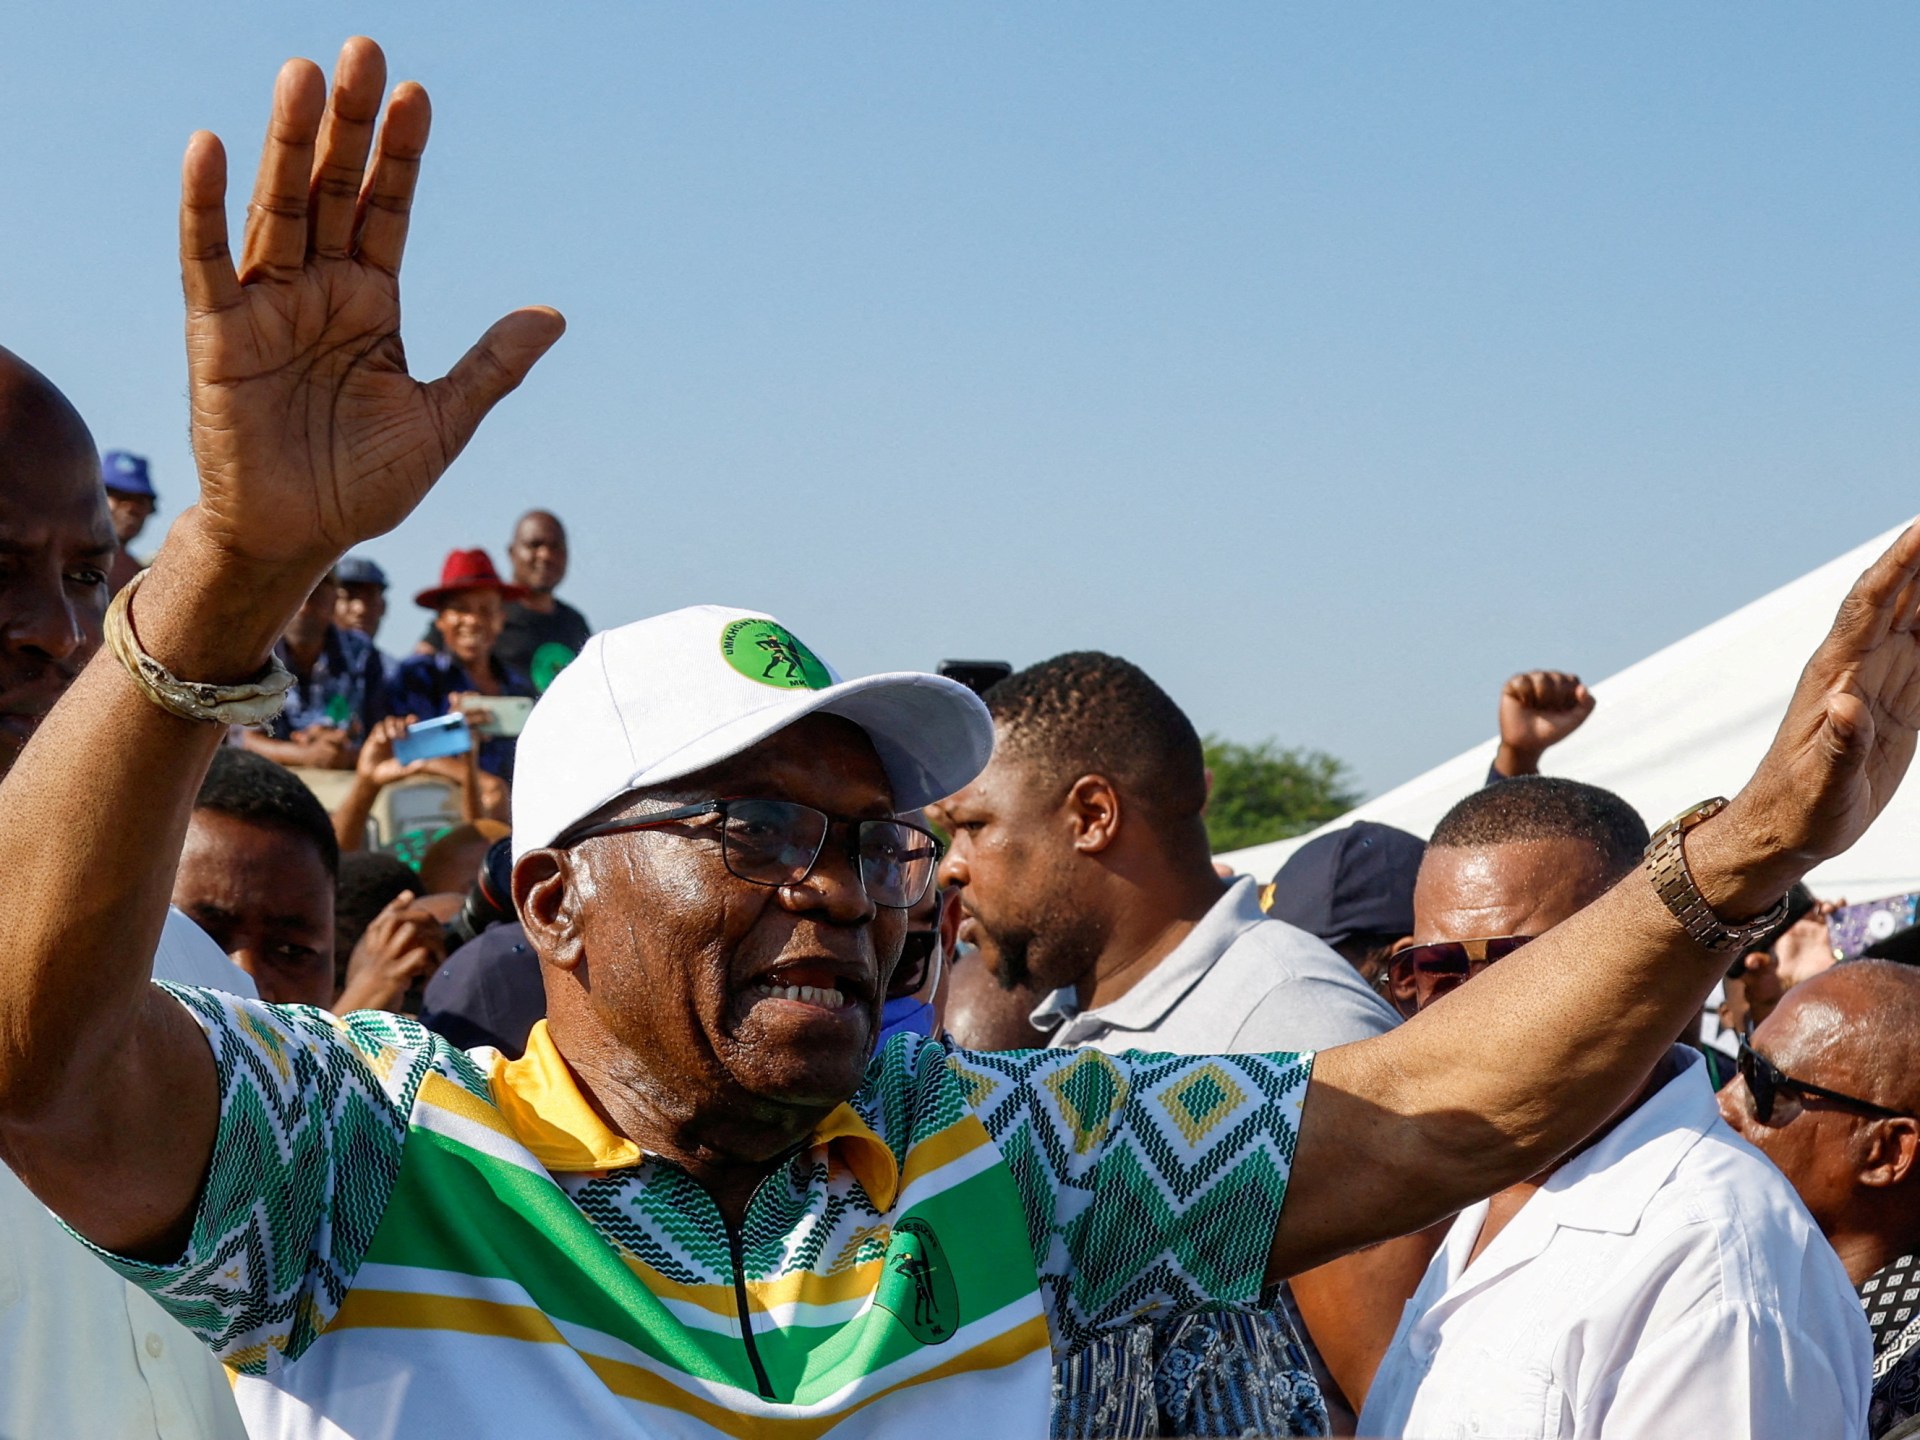 زوما “الفائز” الأكبر في الانتخابات بينما تتجه جنوب أفريقيا لتشكيل حكومة ائتلافية | أخبار – البوكس نيوز